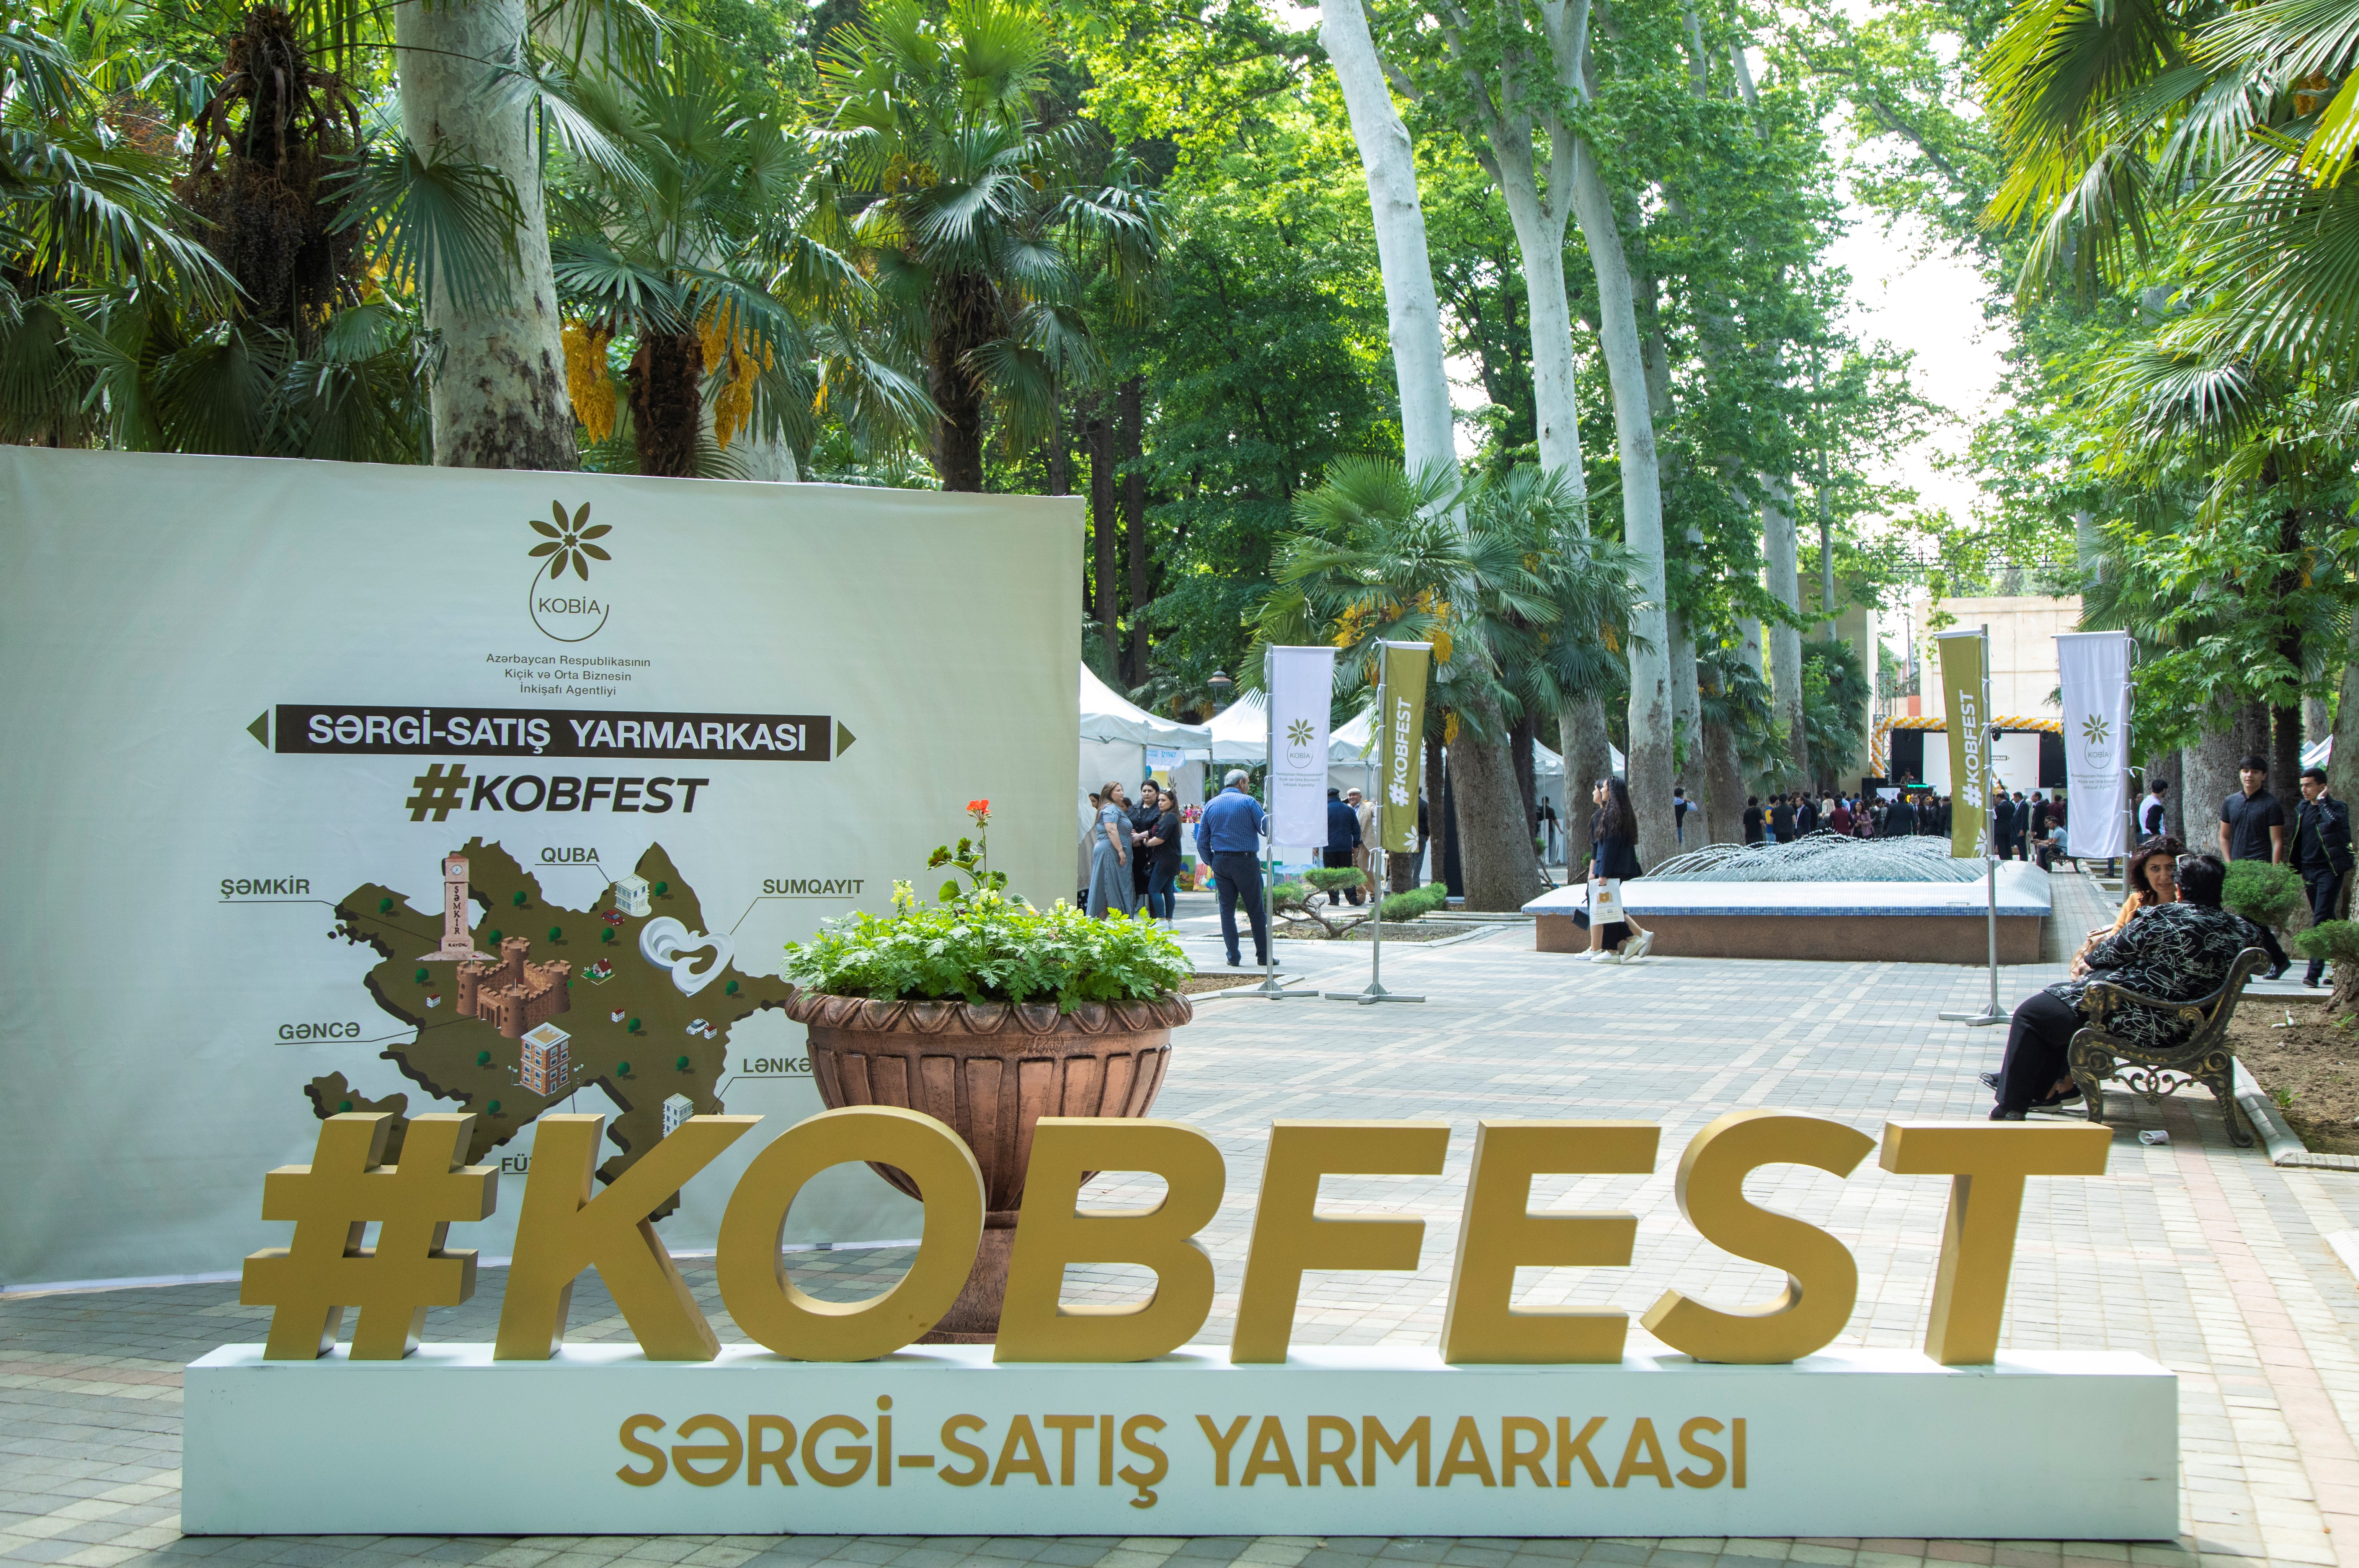 Gəncədə KOB Fest sərgi-satış yarmarkası keçirilib